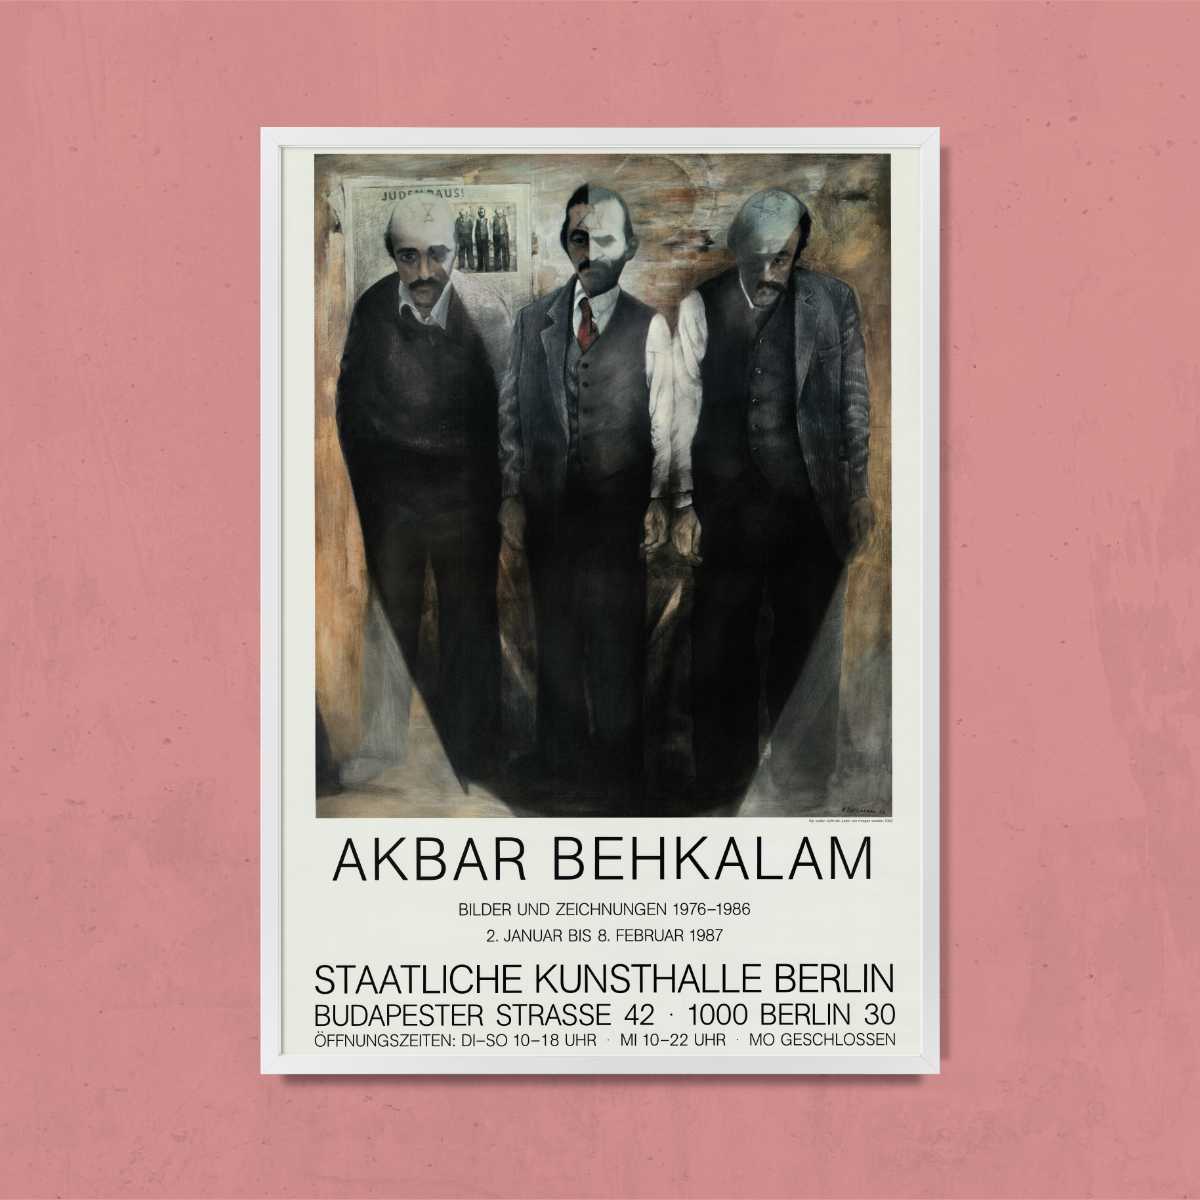 Behkalam, Akbar - Bilder und Zeichnungen 1976-1986 - Wir wollen nicht die Juden von morgen werden, 1986